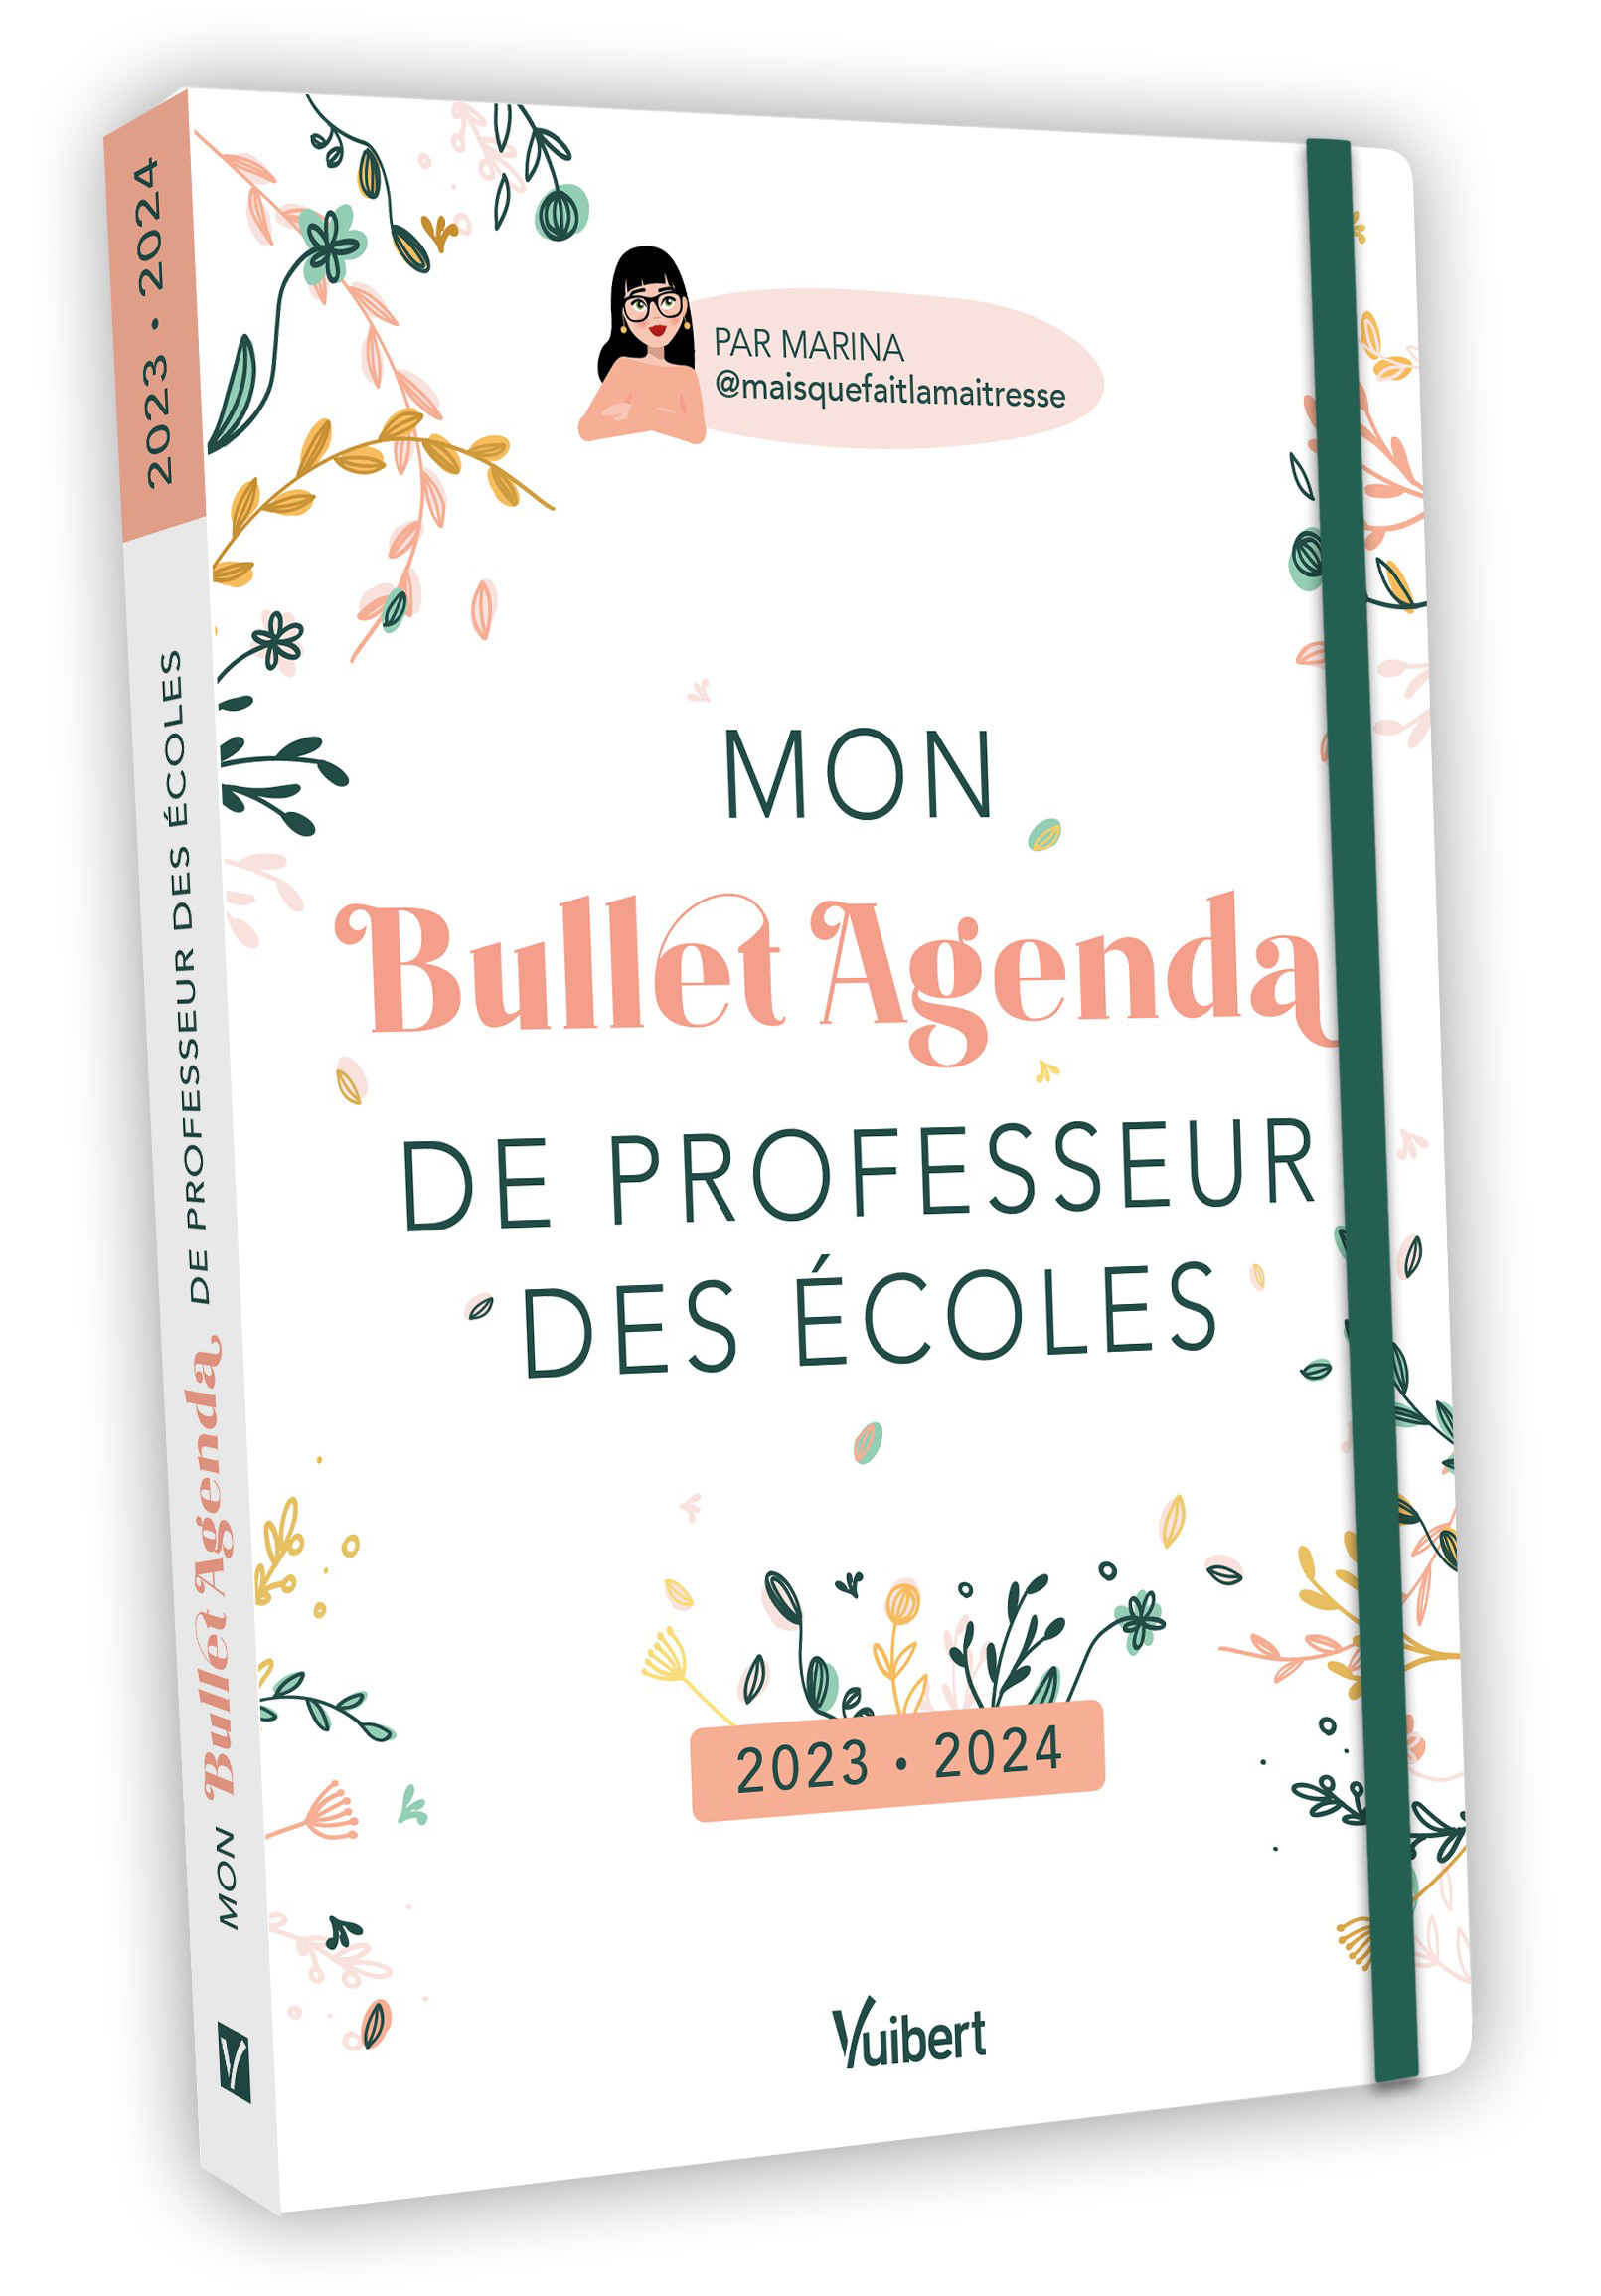 Mon Bullet Agenda de professeur des écoles 2023/2024 | Vuibert